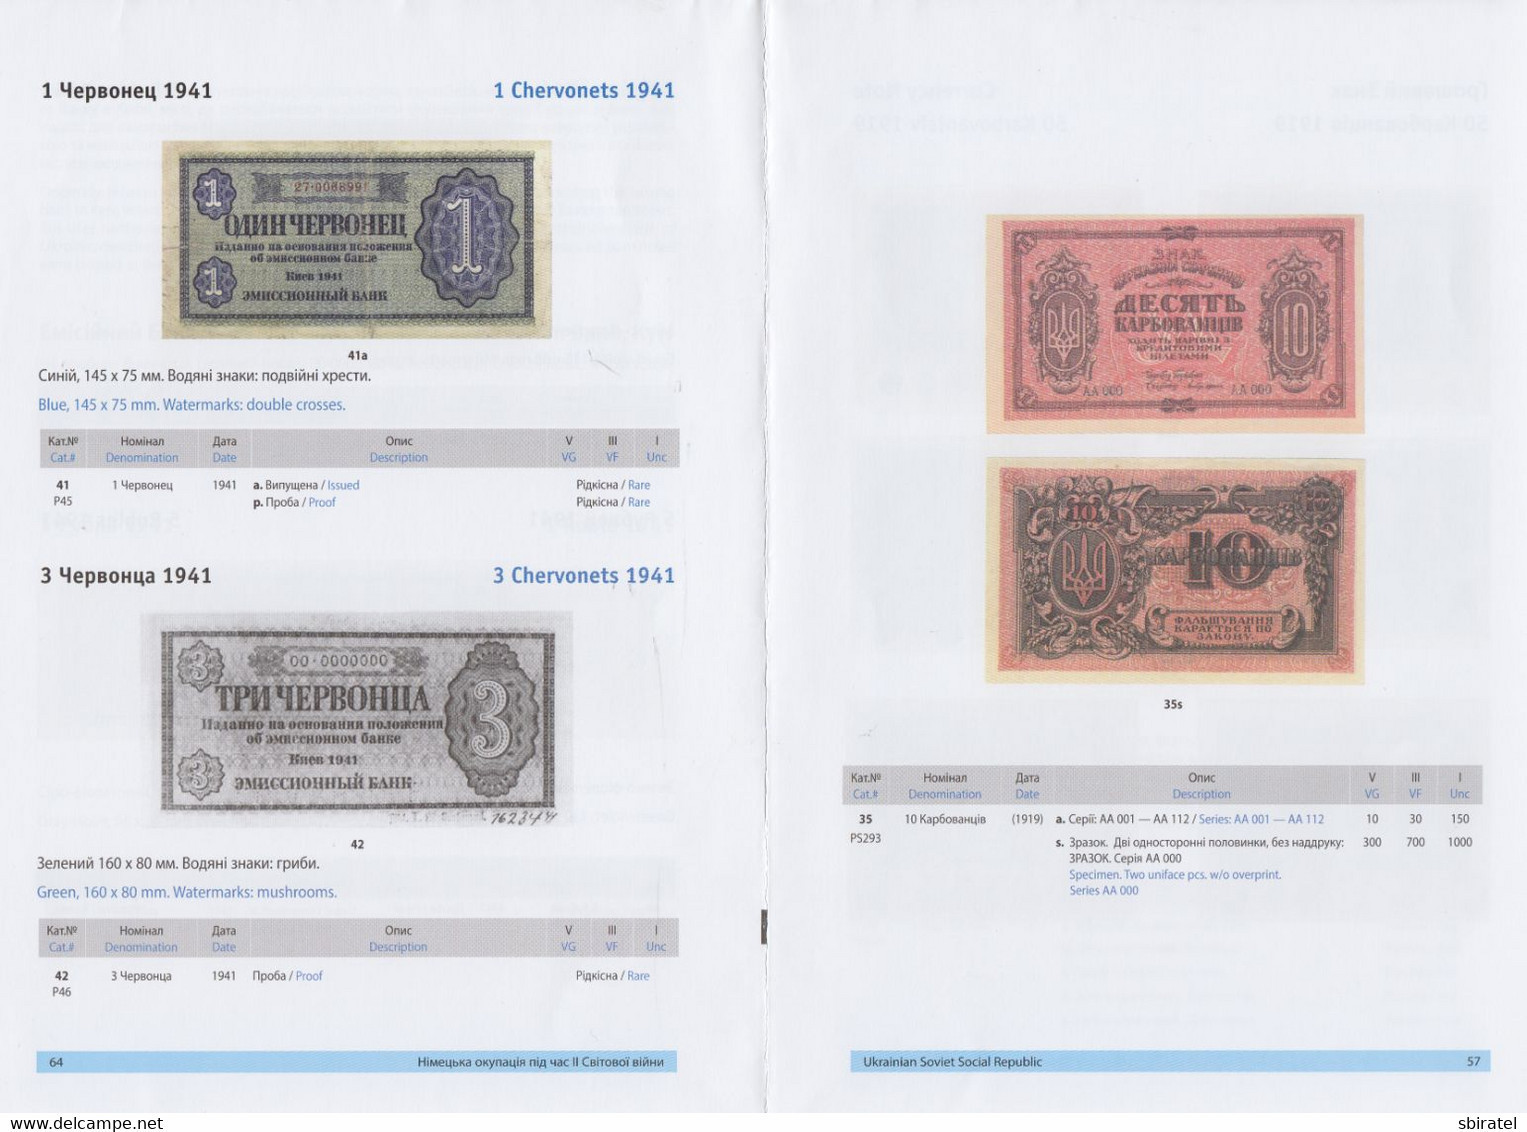 Ukrainian Paper Money 1917 - 2017